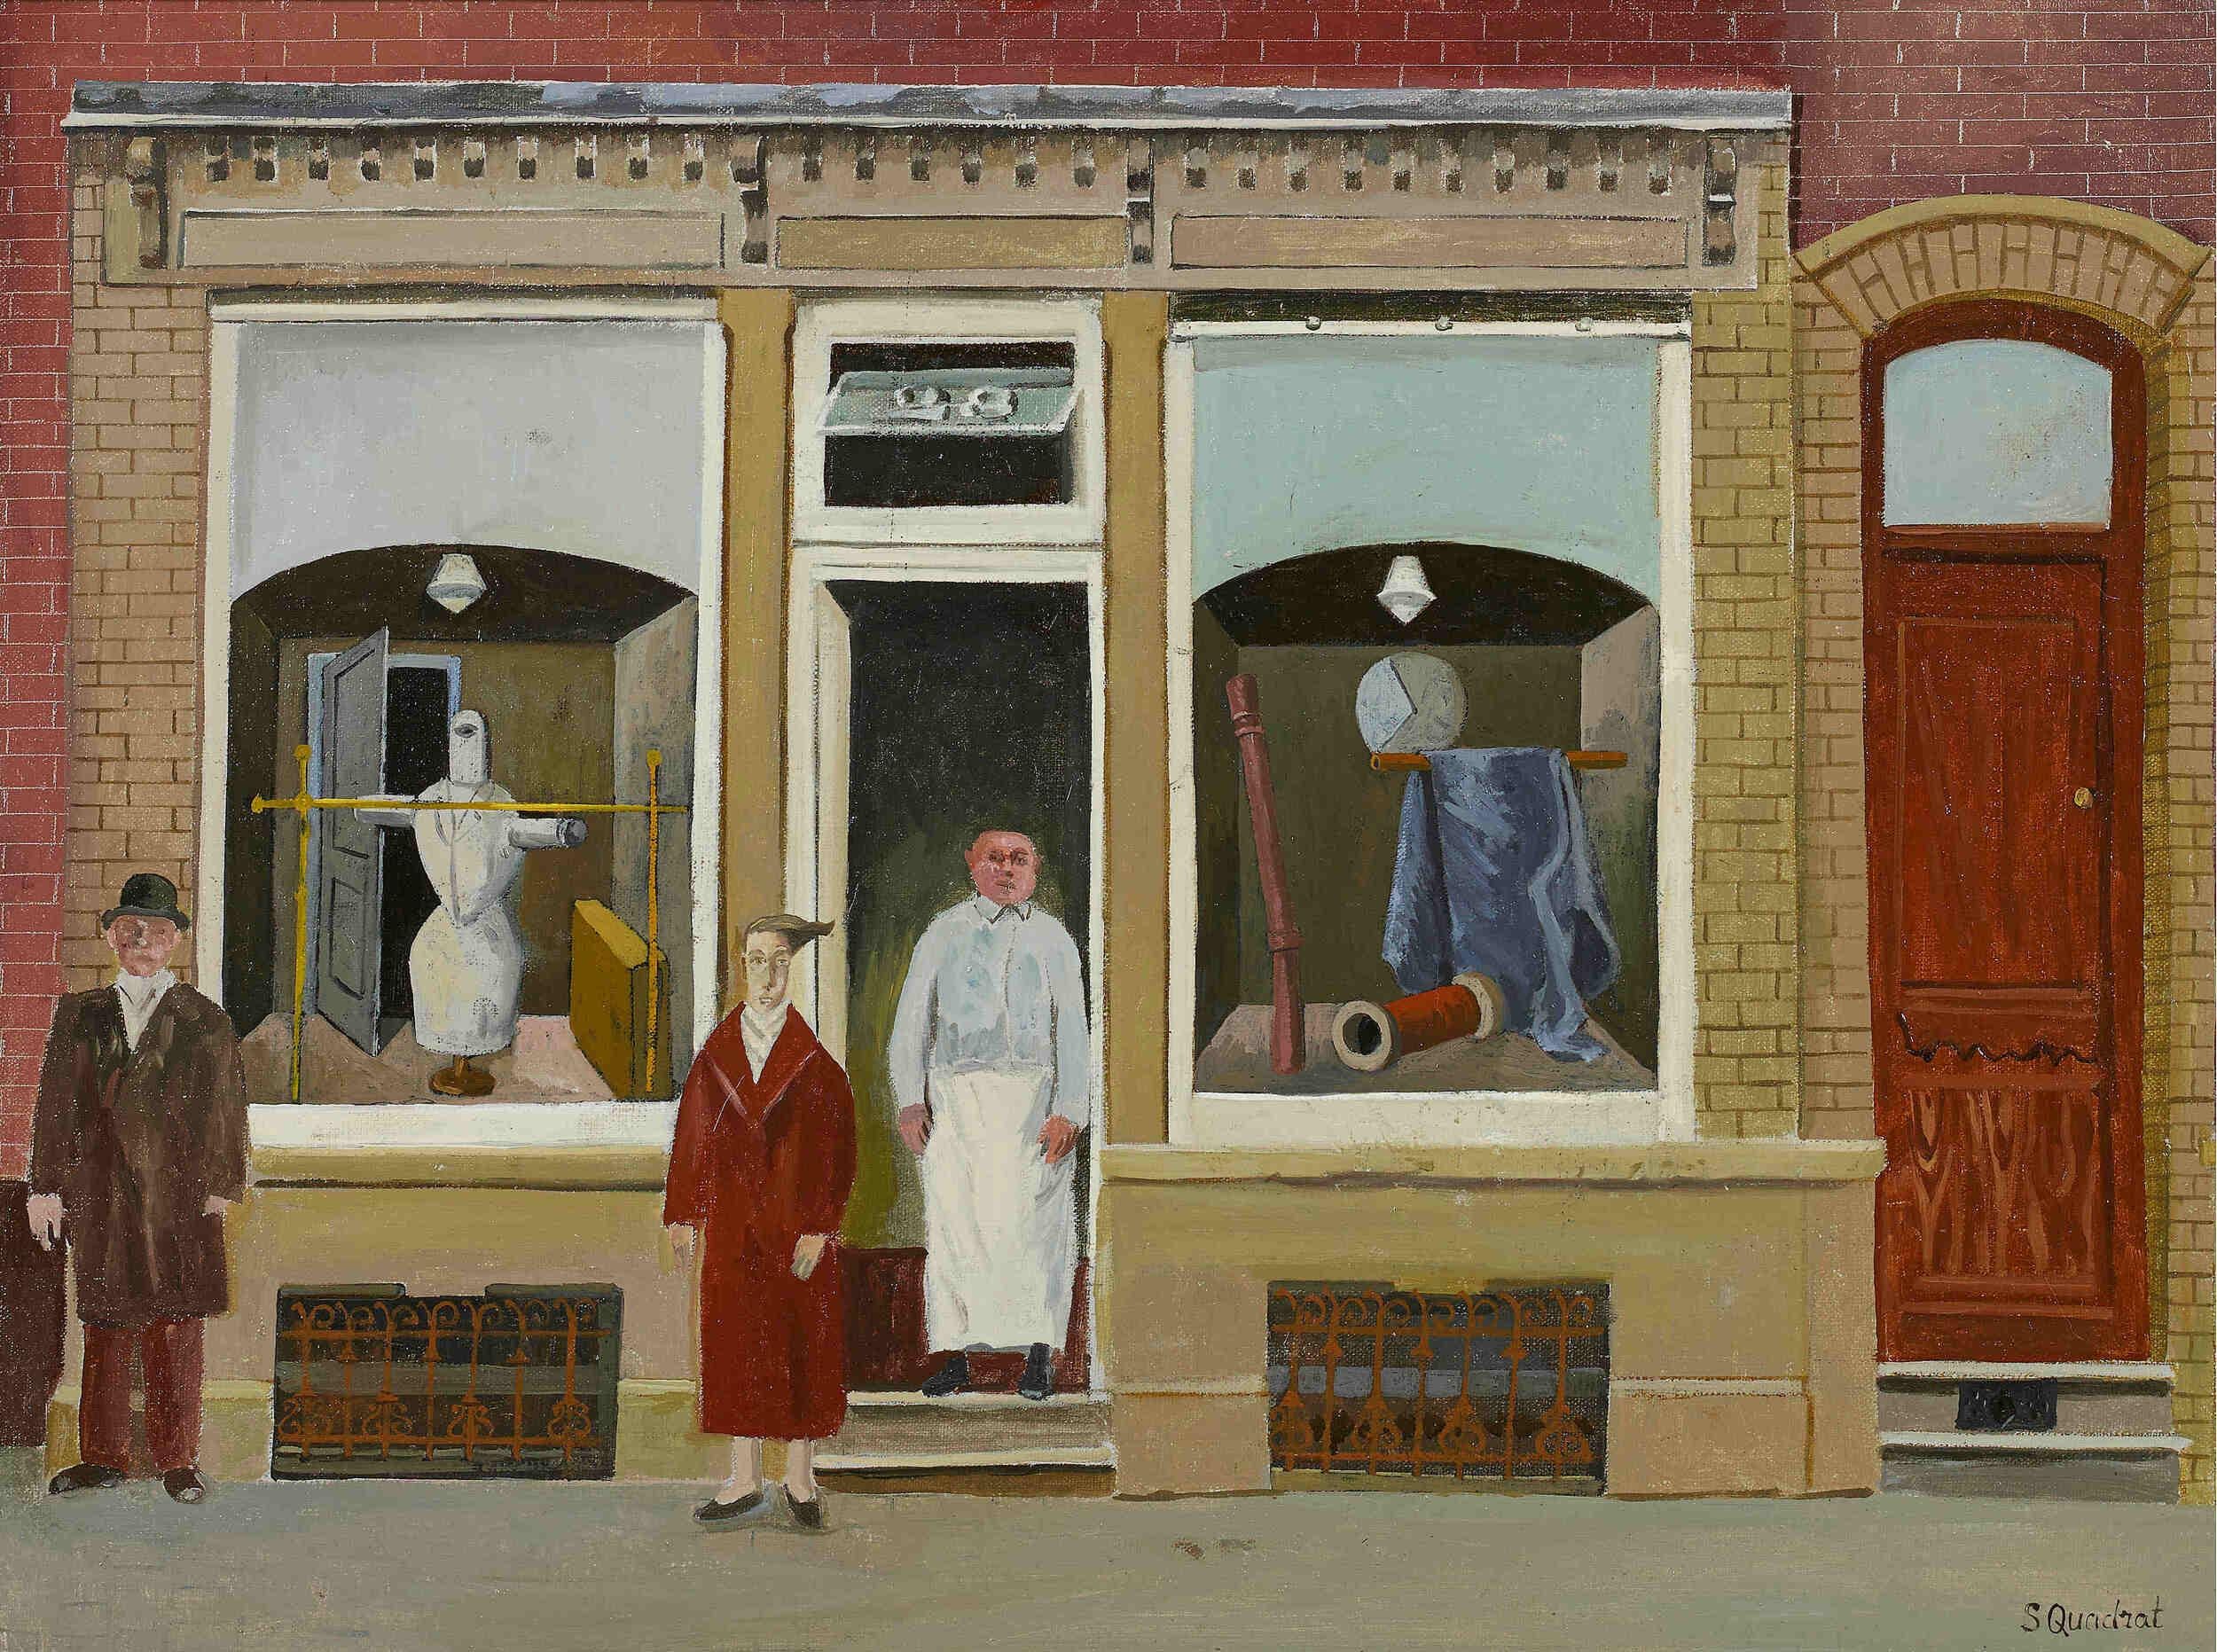 The Belgian Shop - Painting by Simon Quadrat